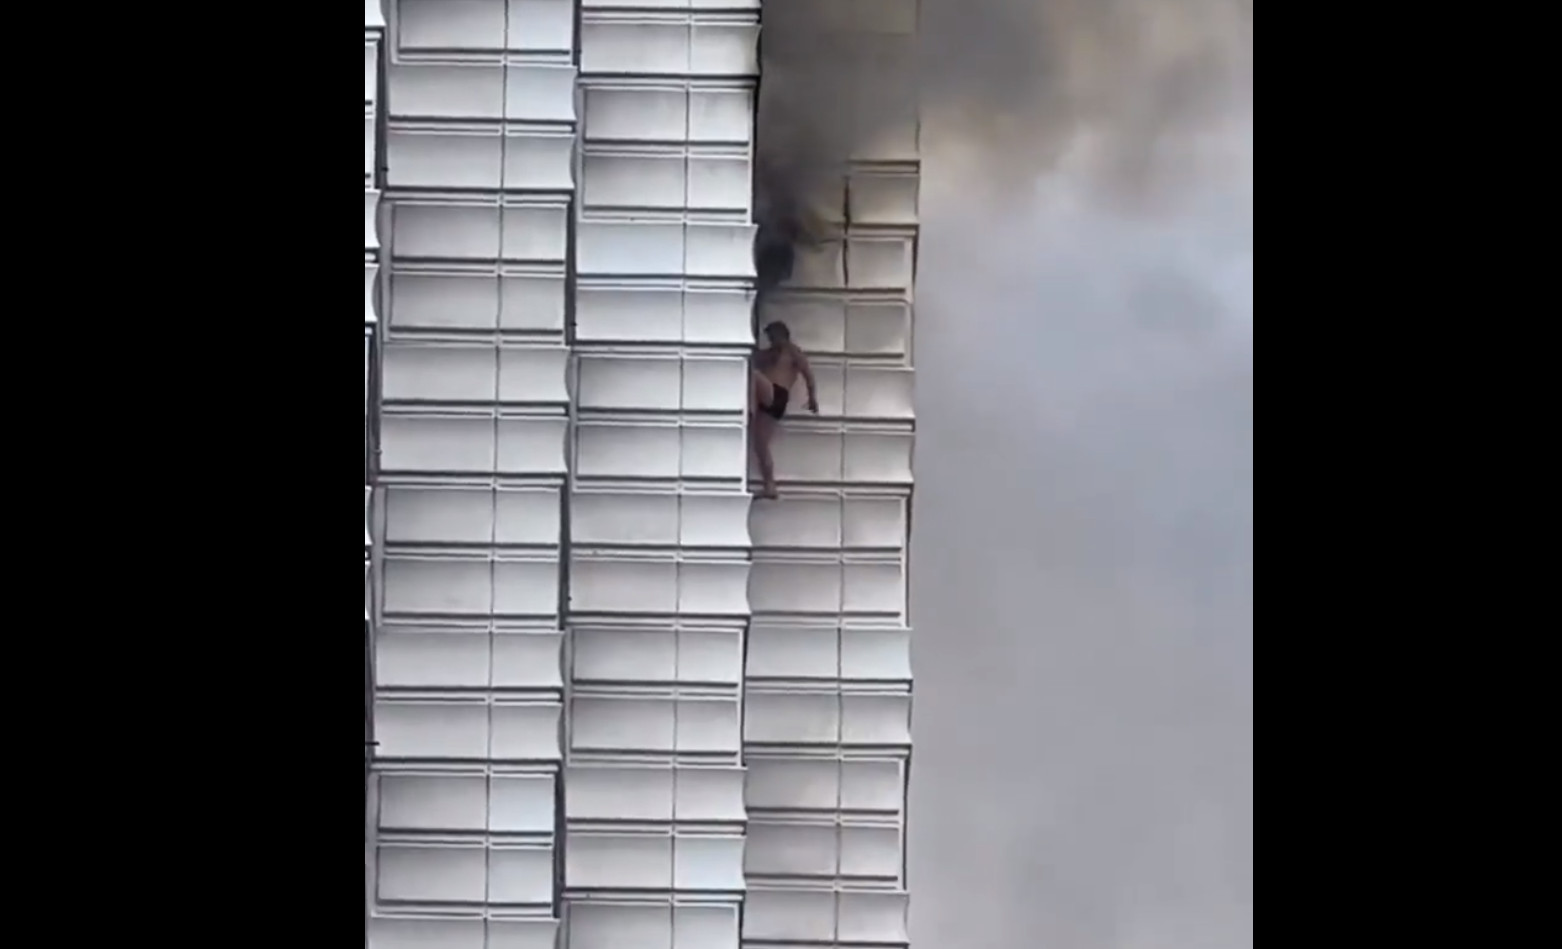 Δύο νεκροί από φωτιά σε πολυκατοικία στο Βερολίνο - Πήδηξαν από τον 12ο όροφο για να σωθούν [Βίντεο]